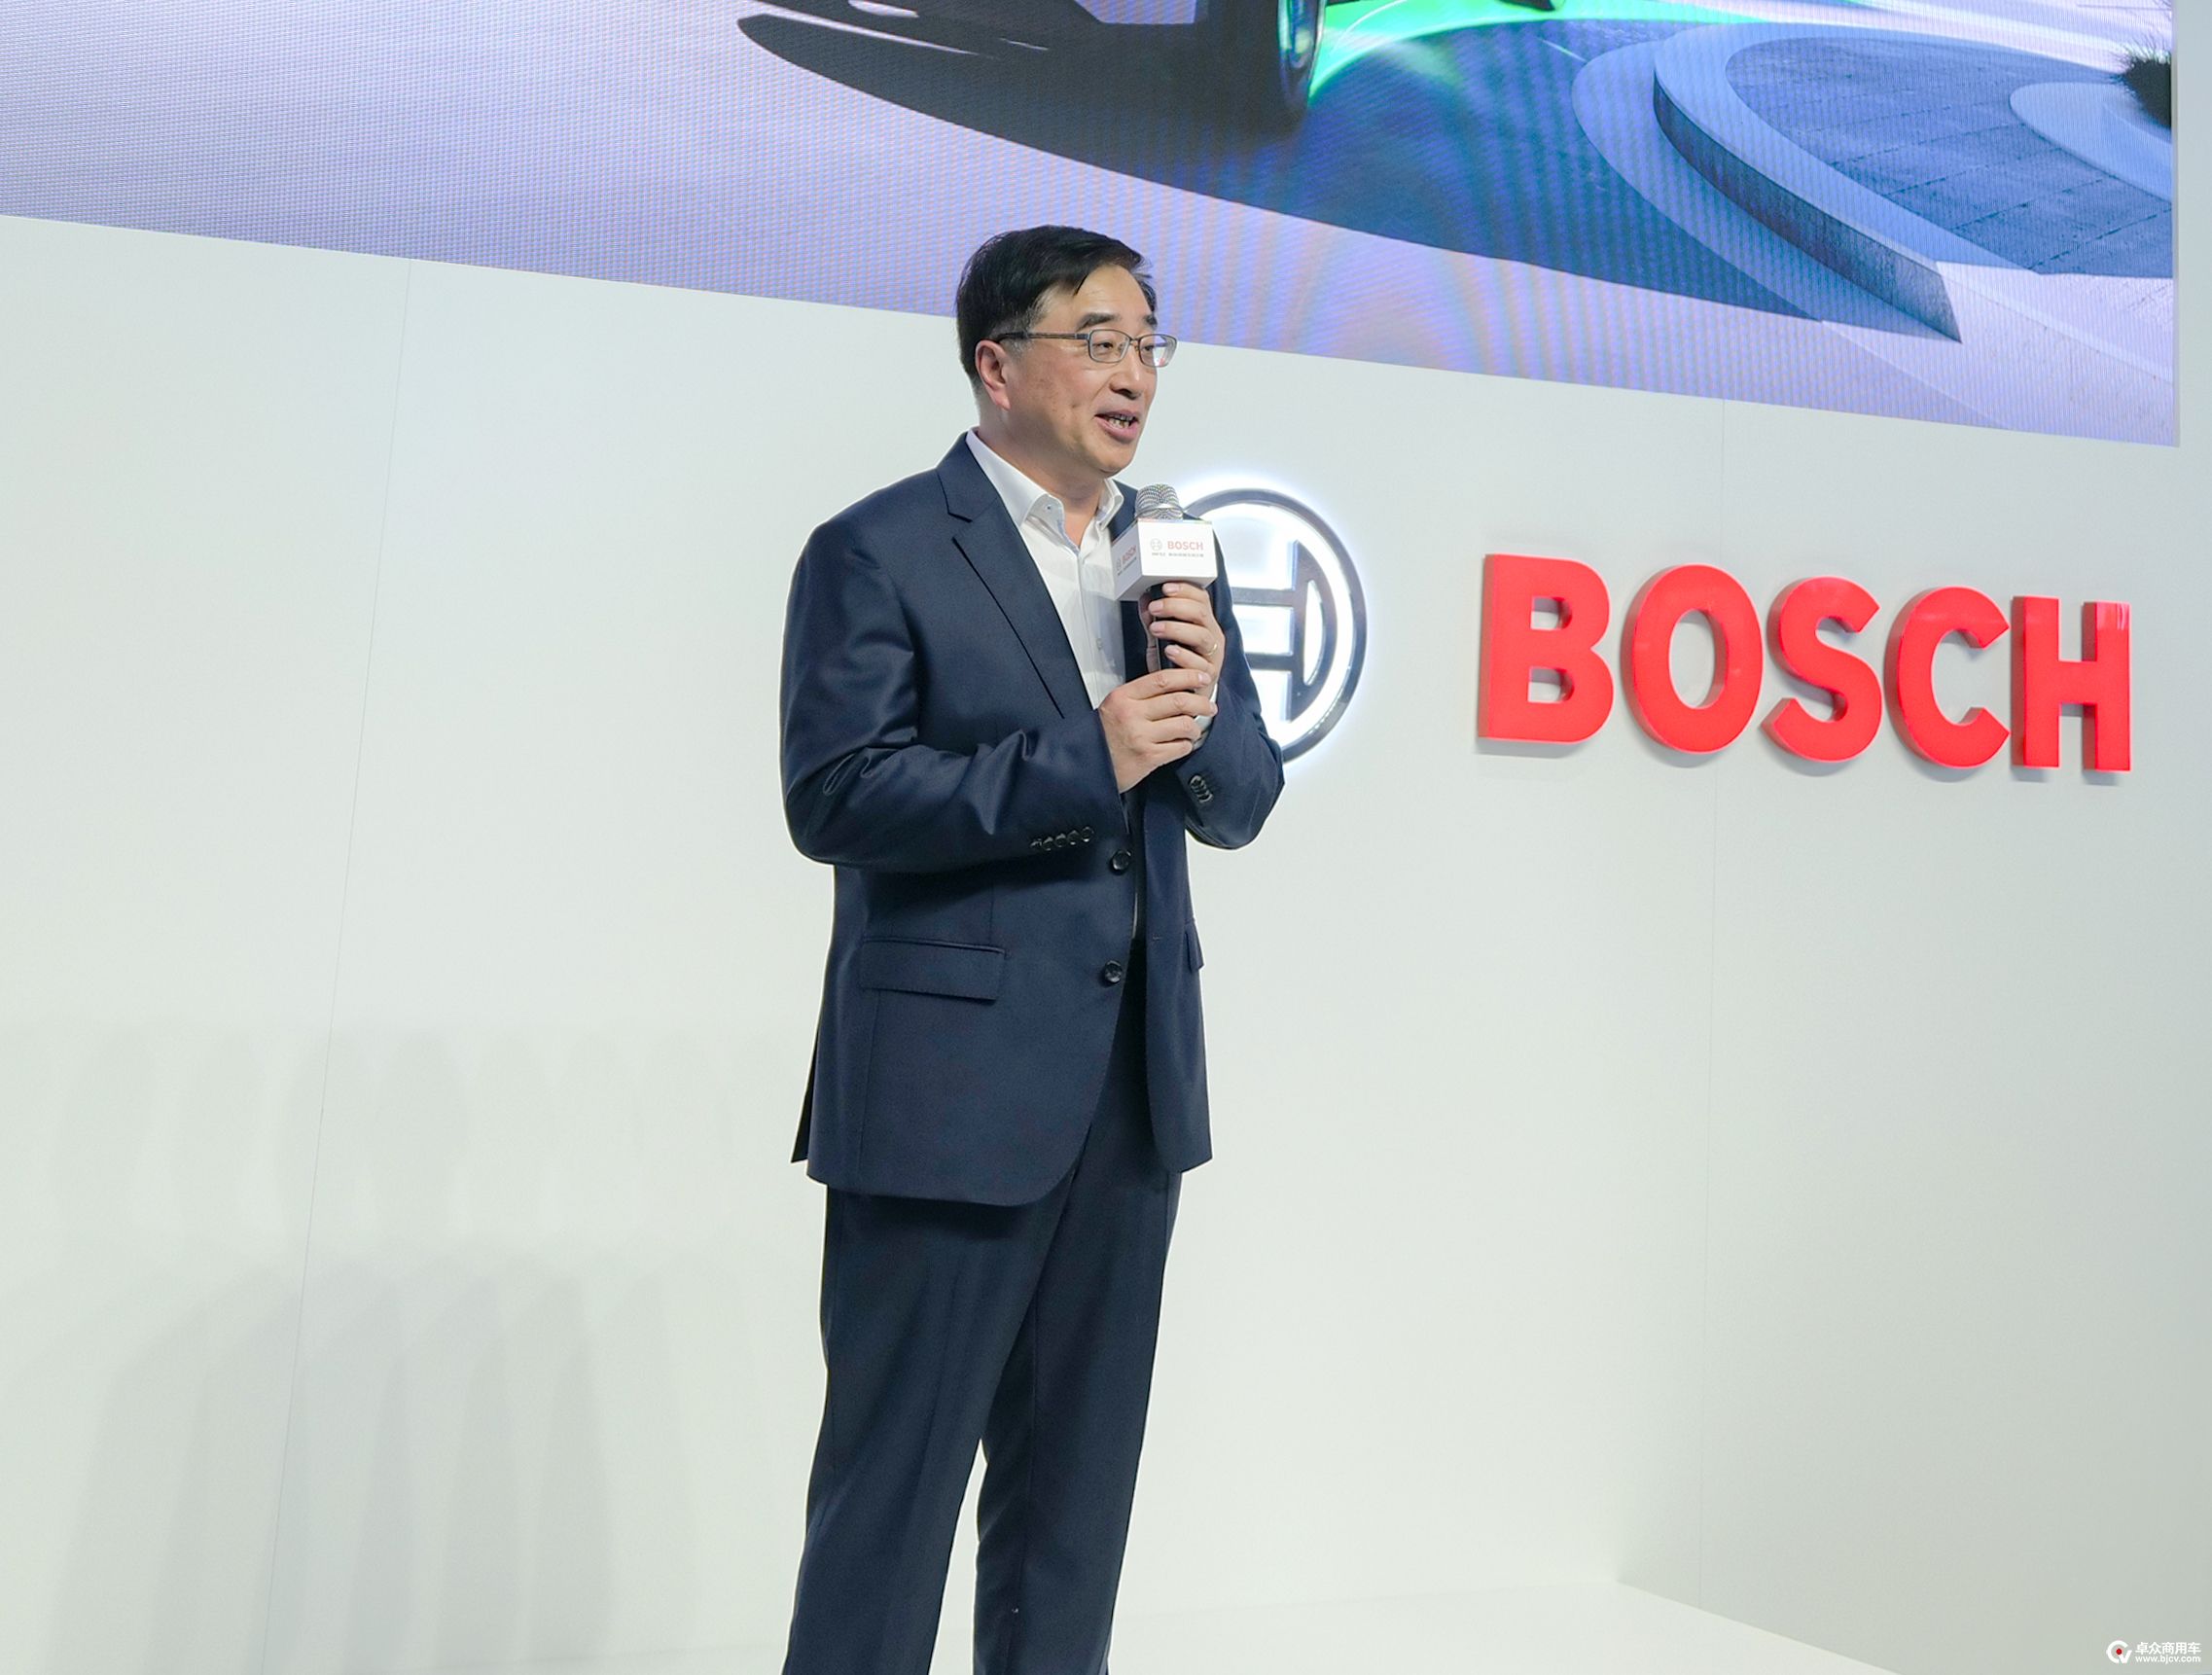 03 博世中国执行副总裁徐大全博士 Dr. Xu Daquan, Executive Vice President of Bosch_China.jpg